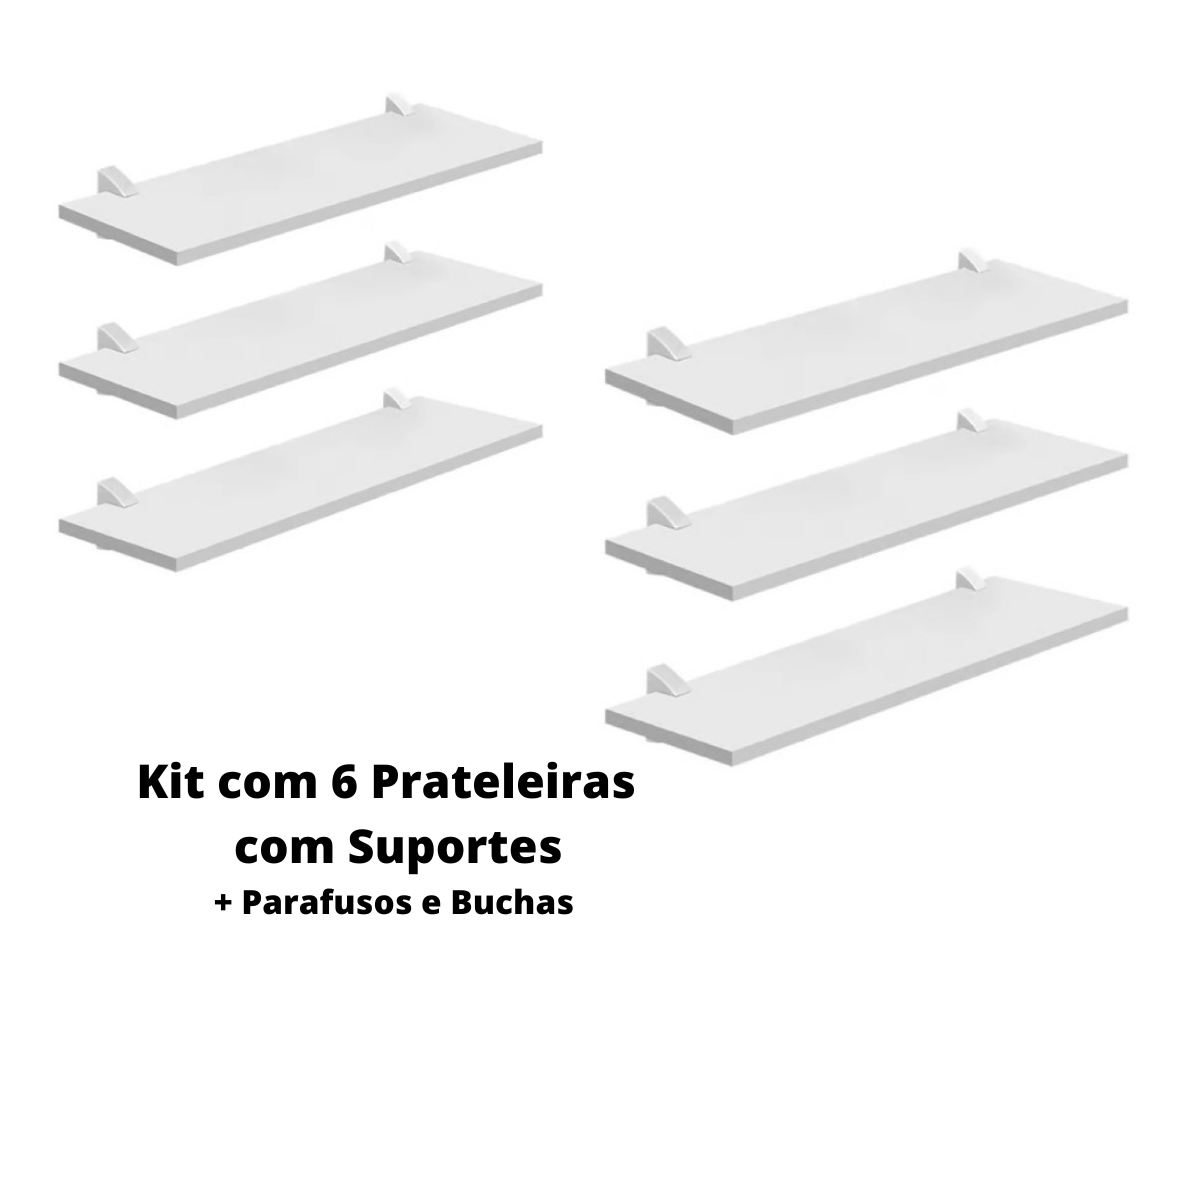 Kit com 6 Prateleiras Mdp Bcas 20x60 com Suportes D-core - 2